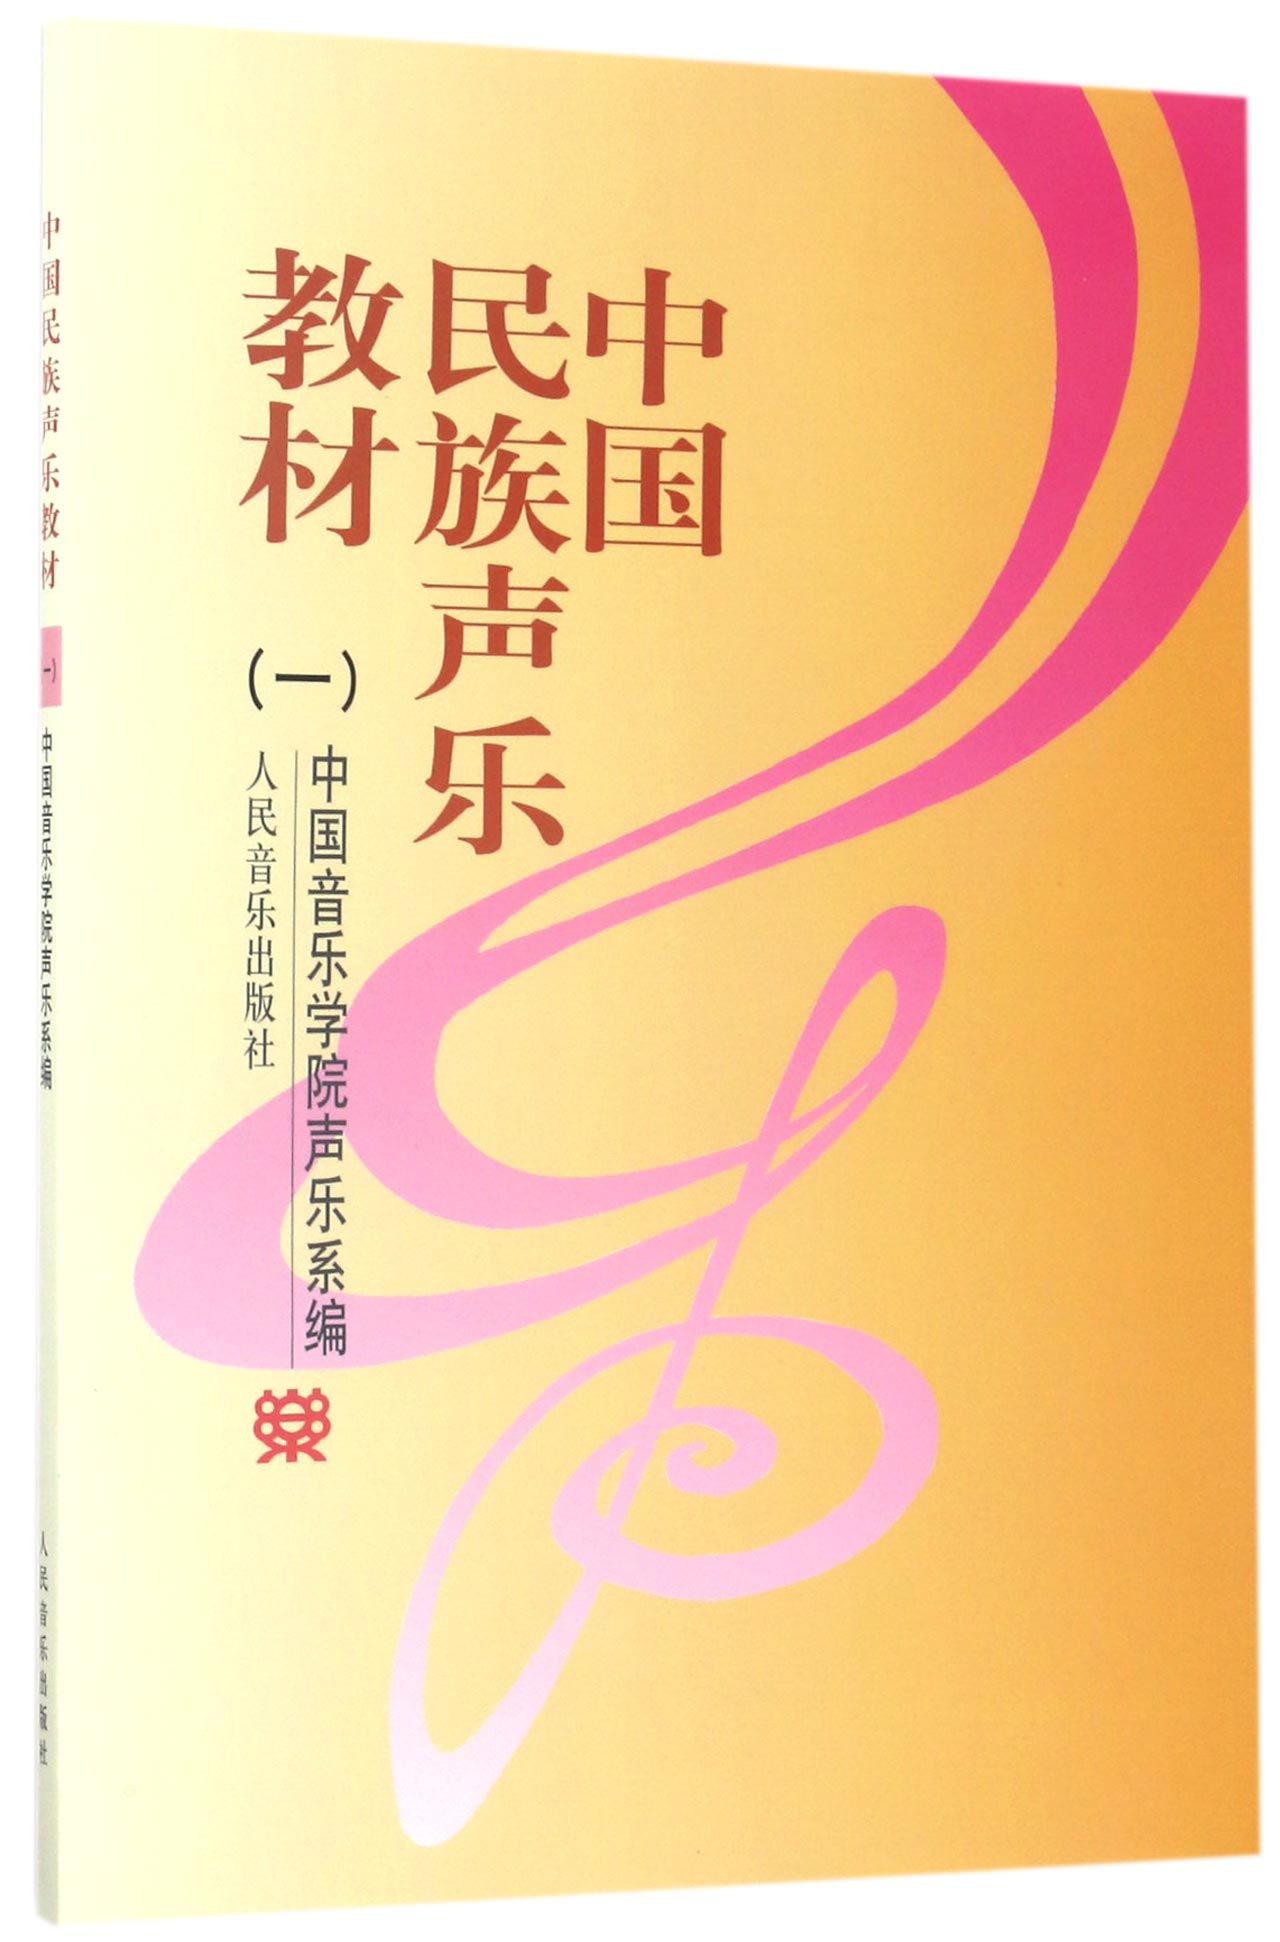 中国民族声乐教材(1)